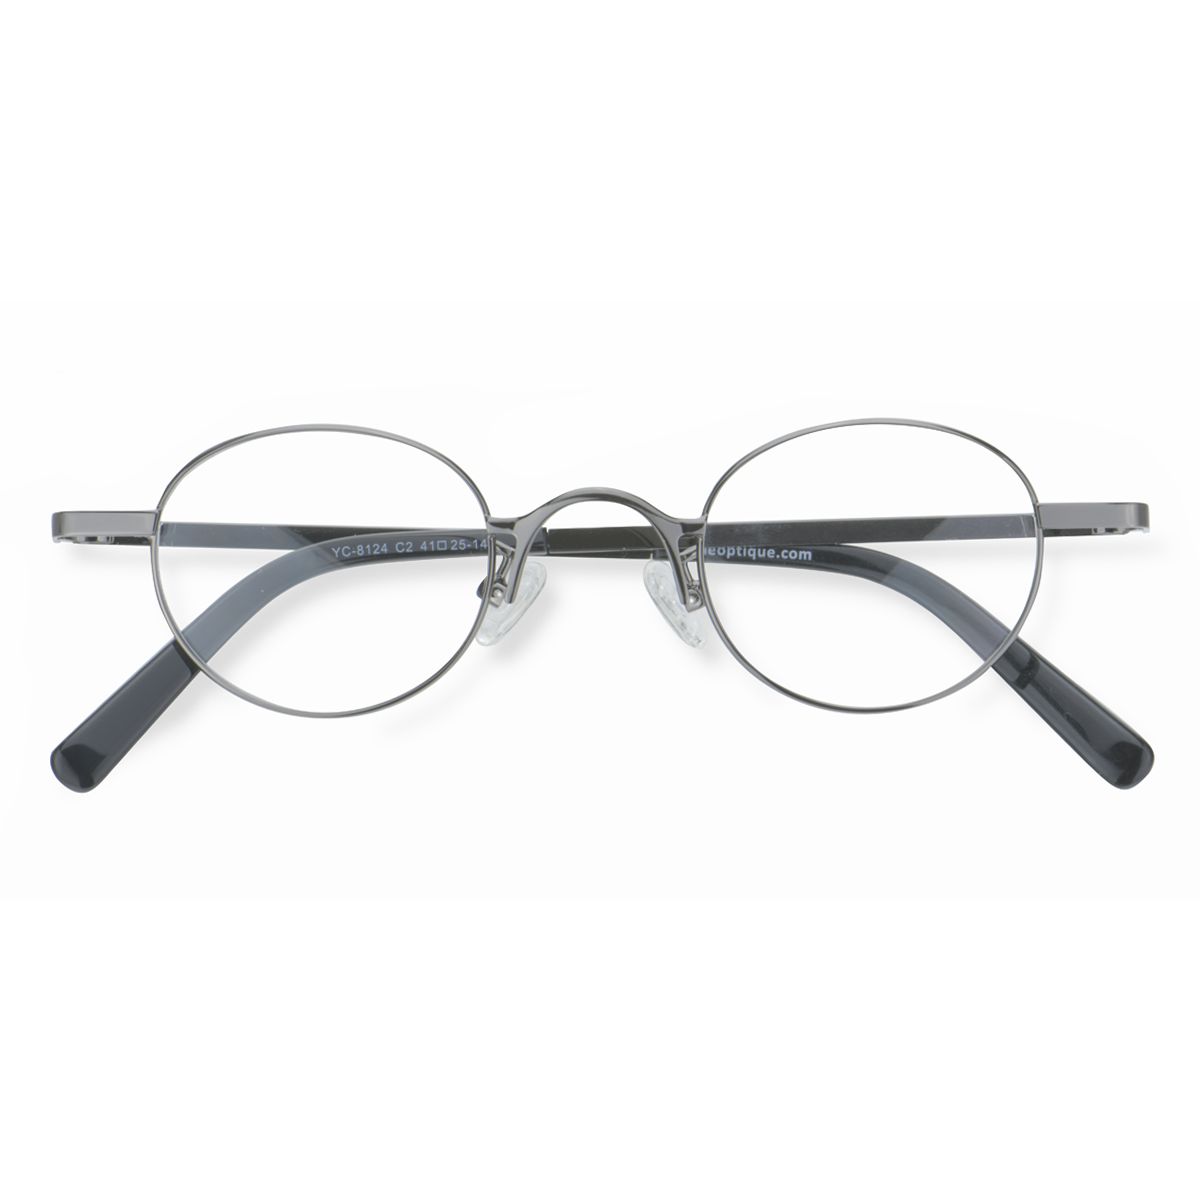 YC-8124 Oval Silver Eyeglasses Frames | Leoptique